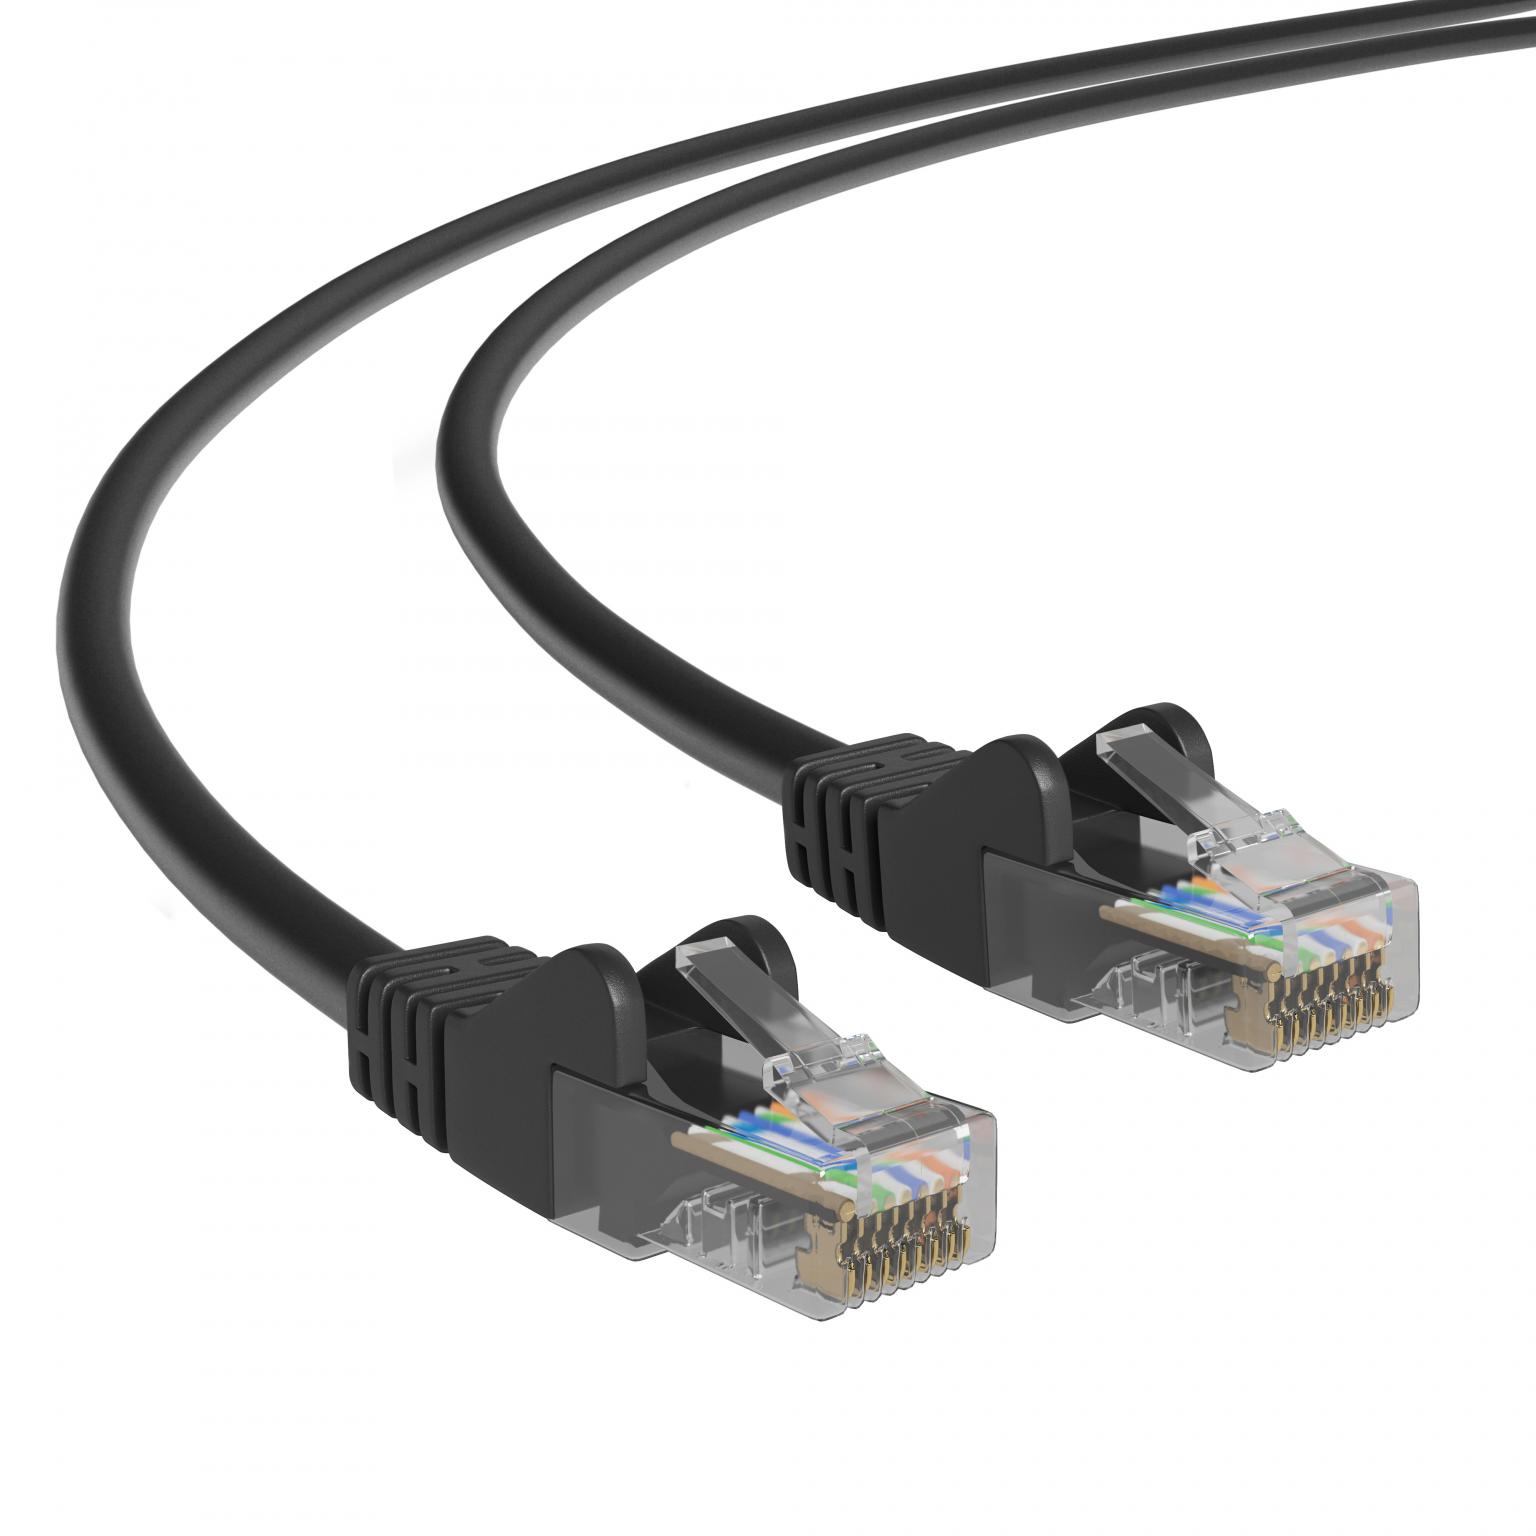 Concreet Briljant Beoordeling UTP CAT.5 NETWERK KABEL - Type: UTP CAT5 Netwerkkabel, (patch kabel)  Afgeschermd - PVC, Lengte: 3 Meter, Kleur: Zwart.